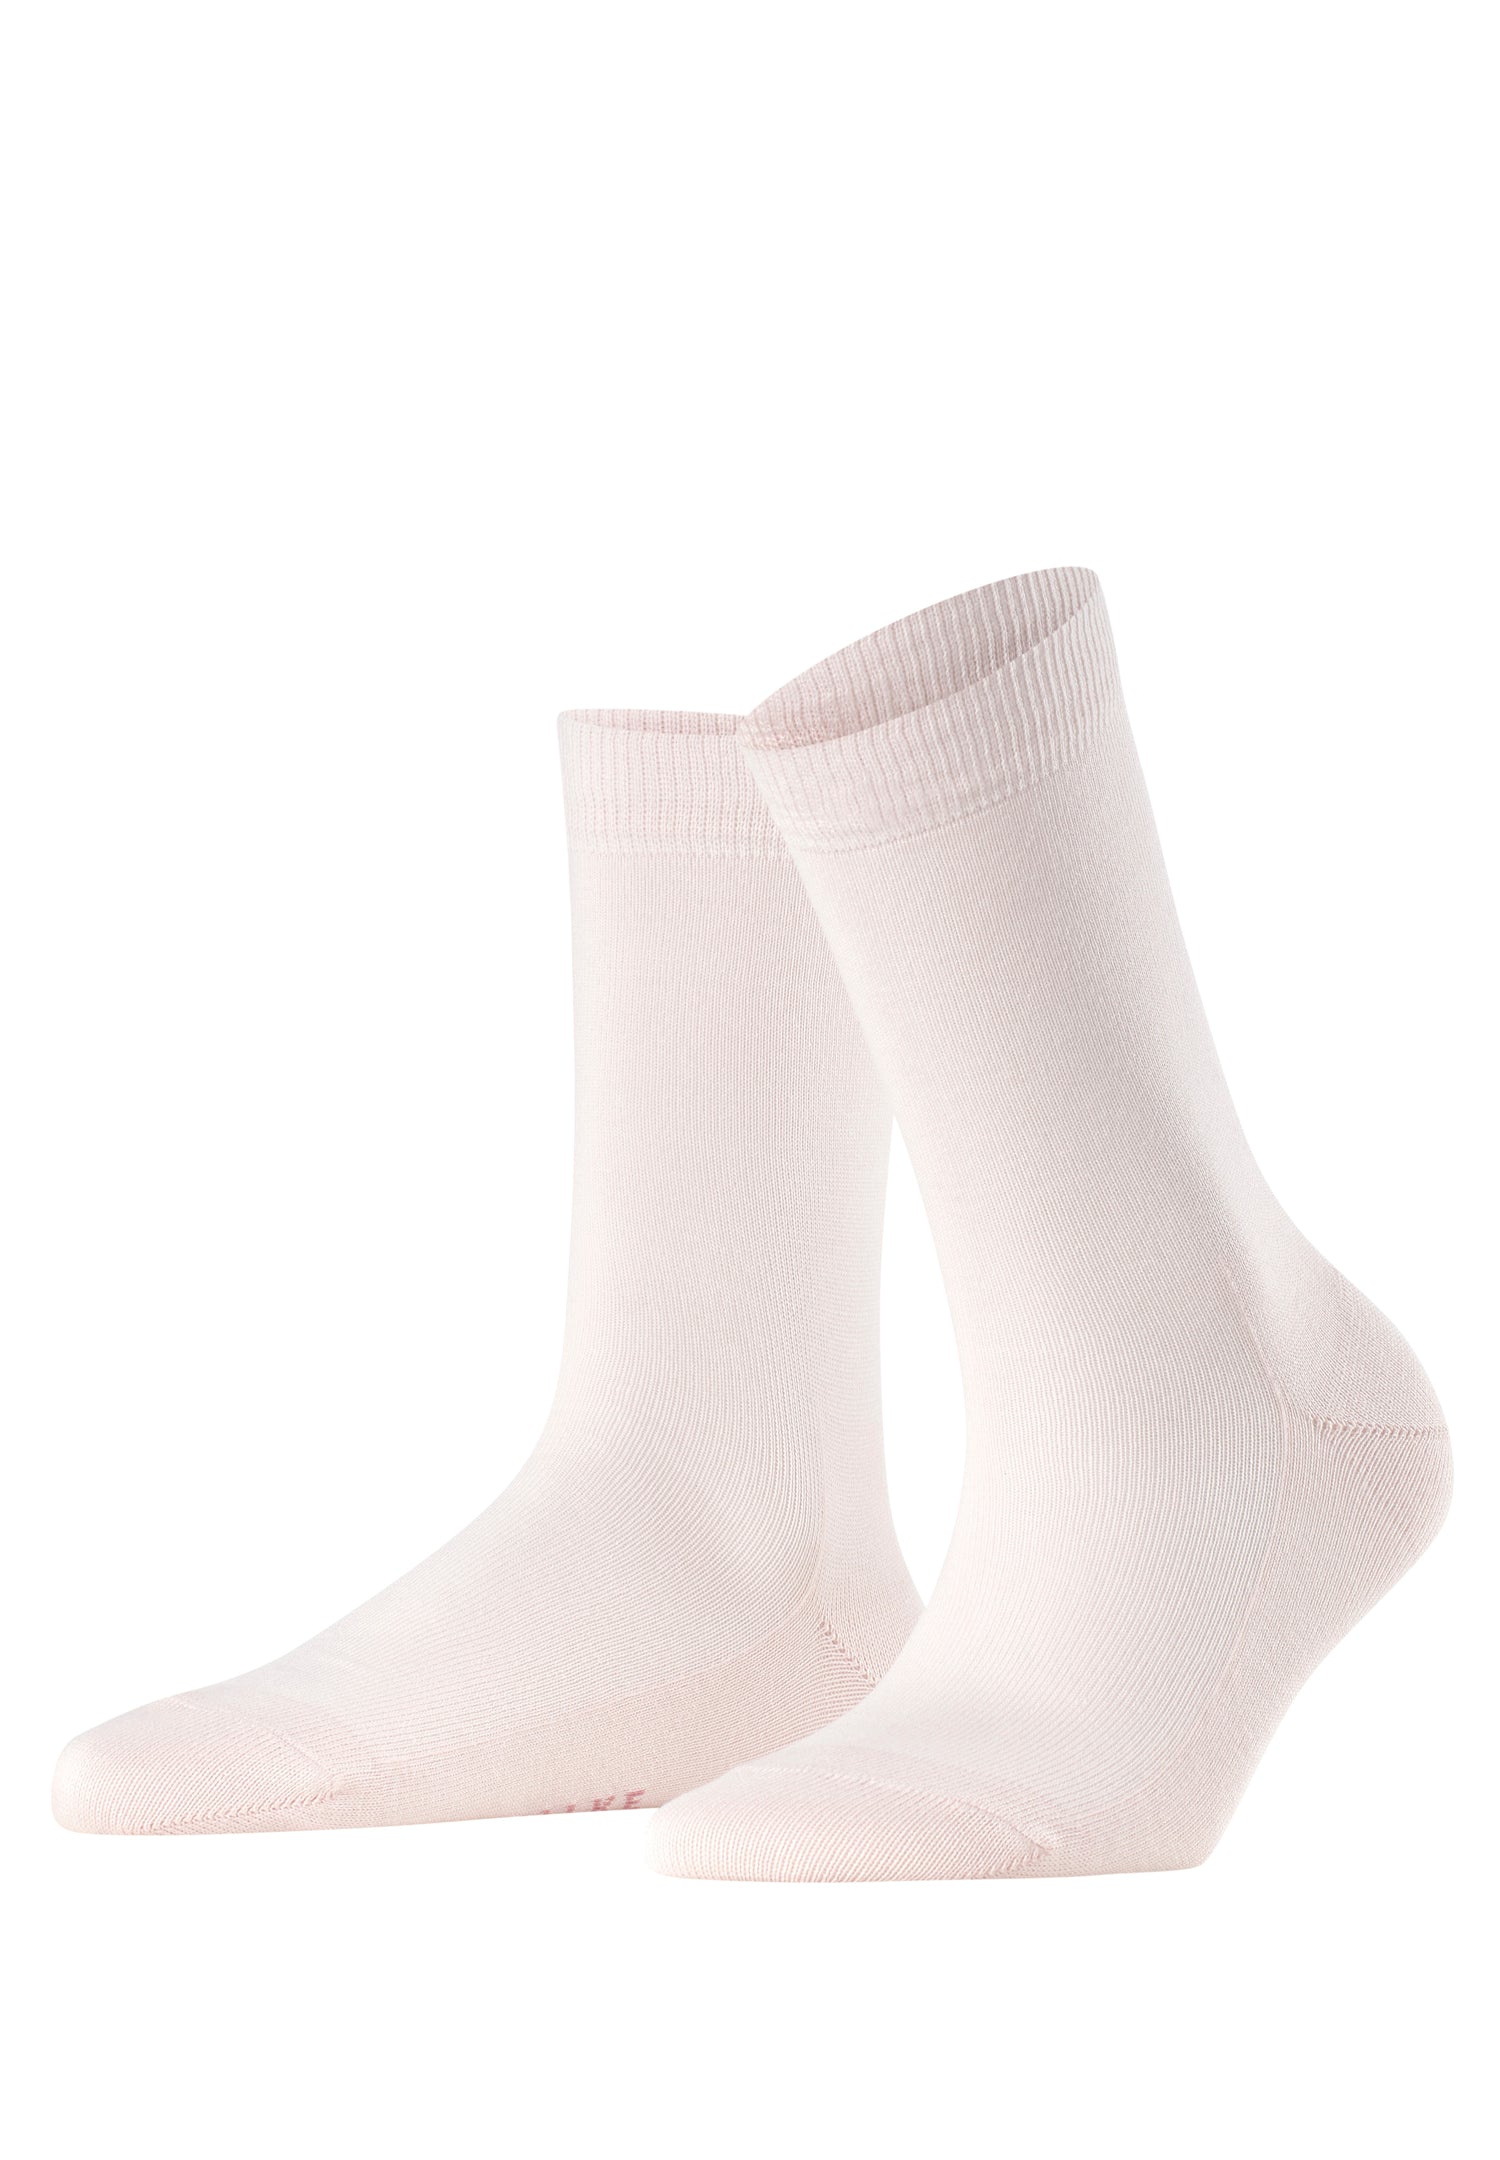 46490 Family Sock Sock - 8458 Light Pink